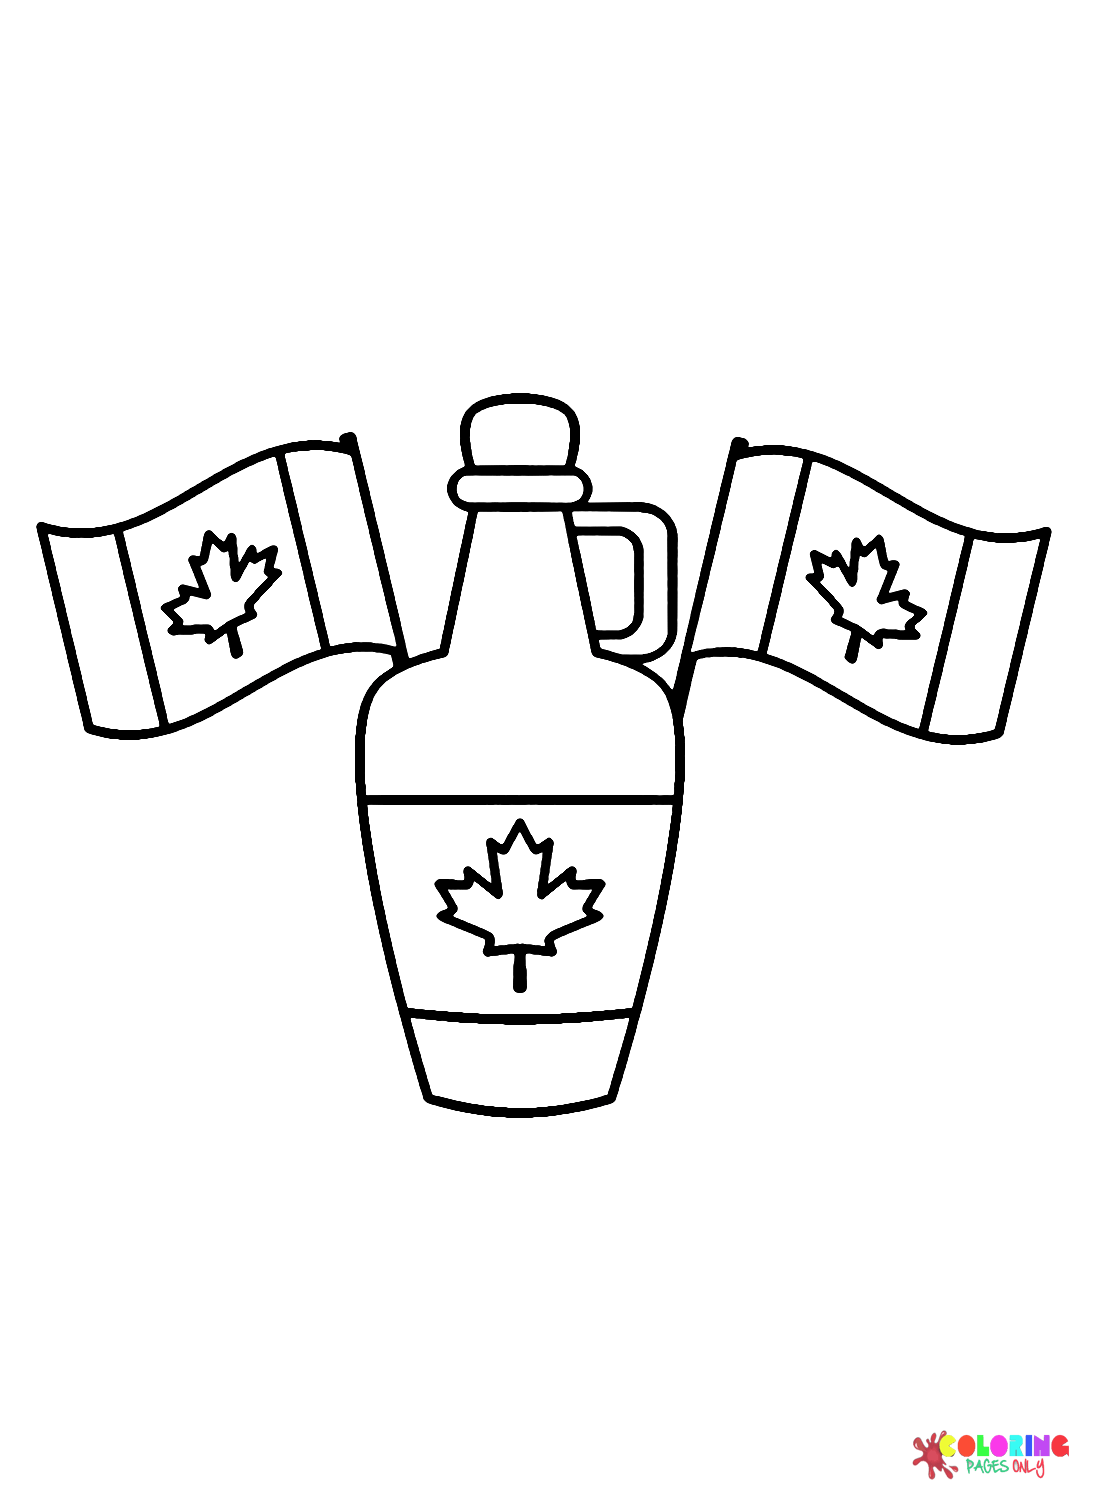 العلم الكندي مع زجاجة من يوم كندا